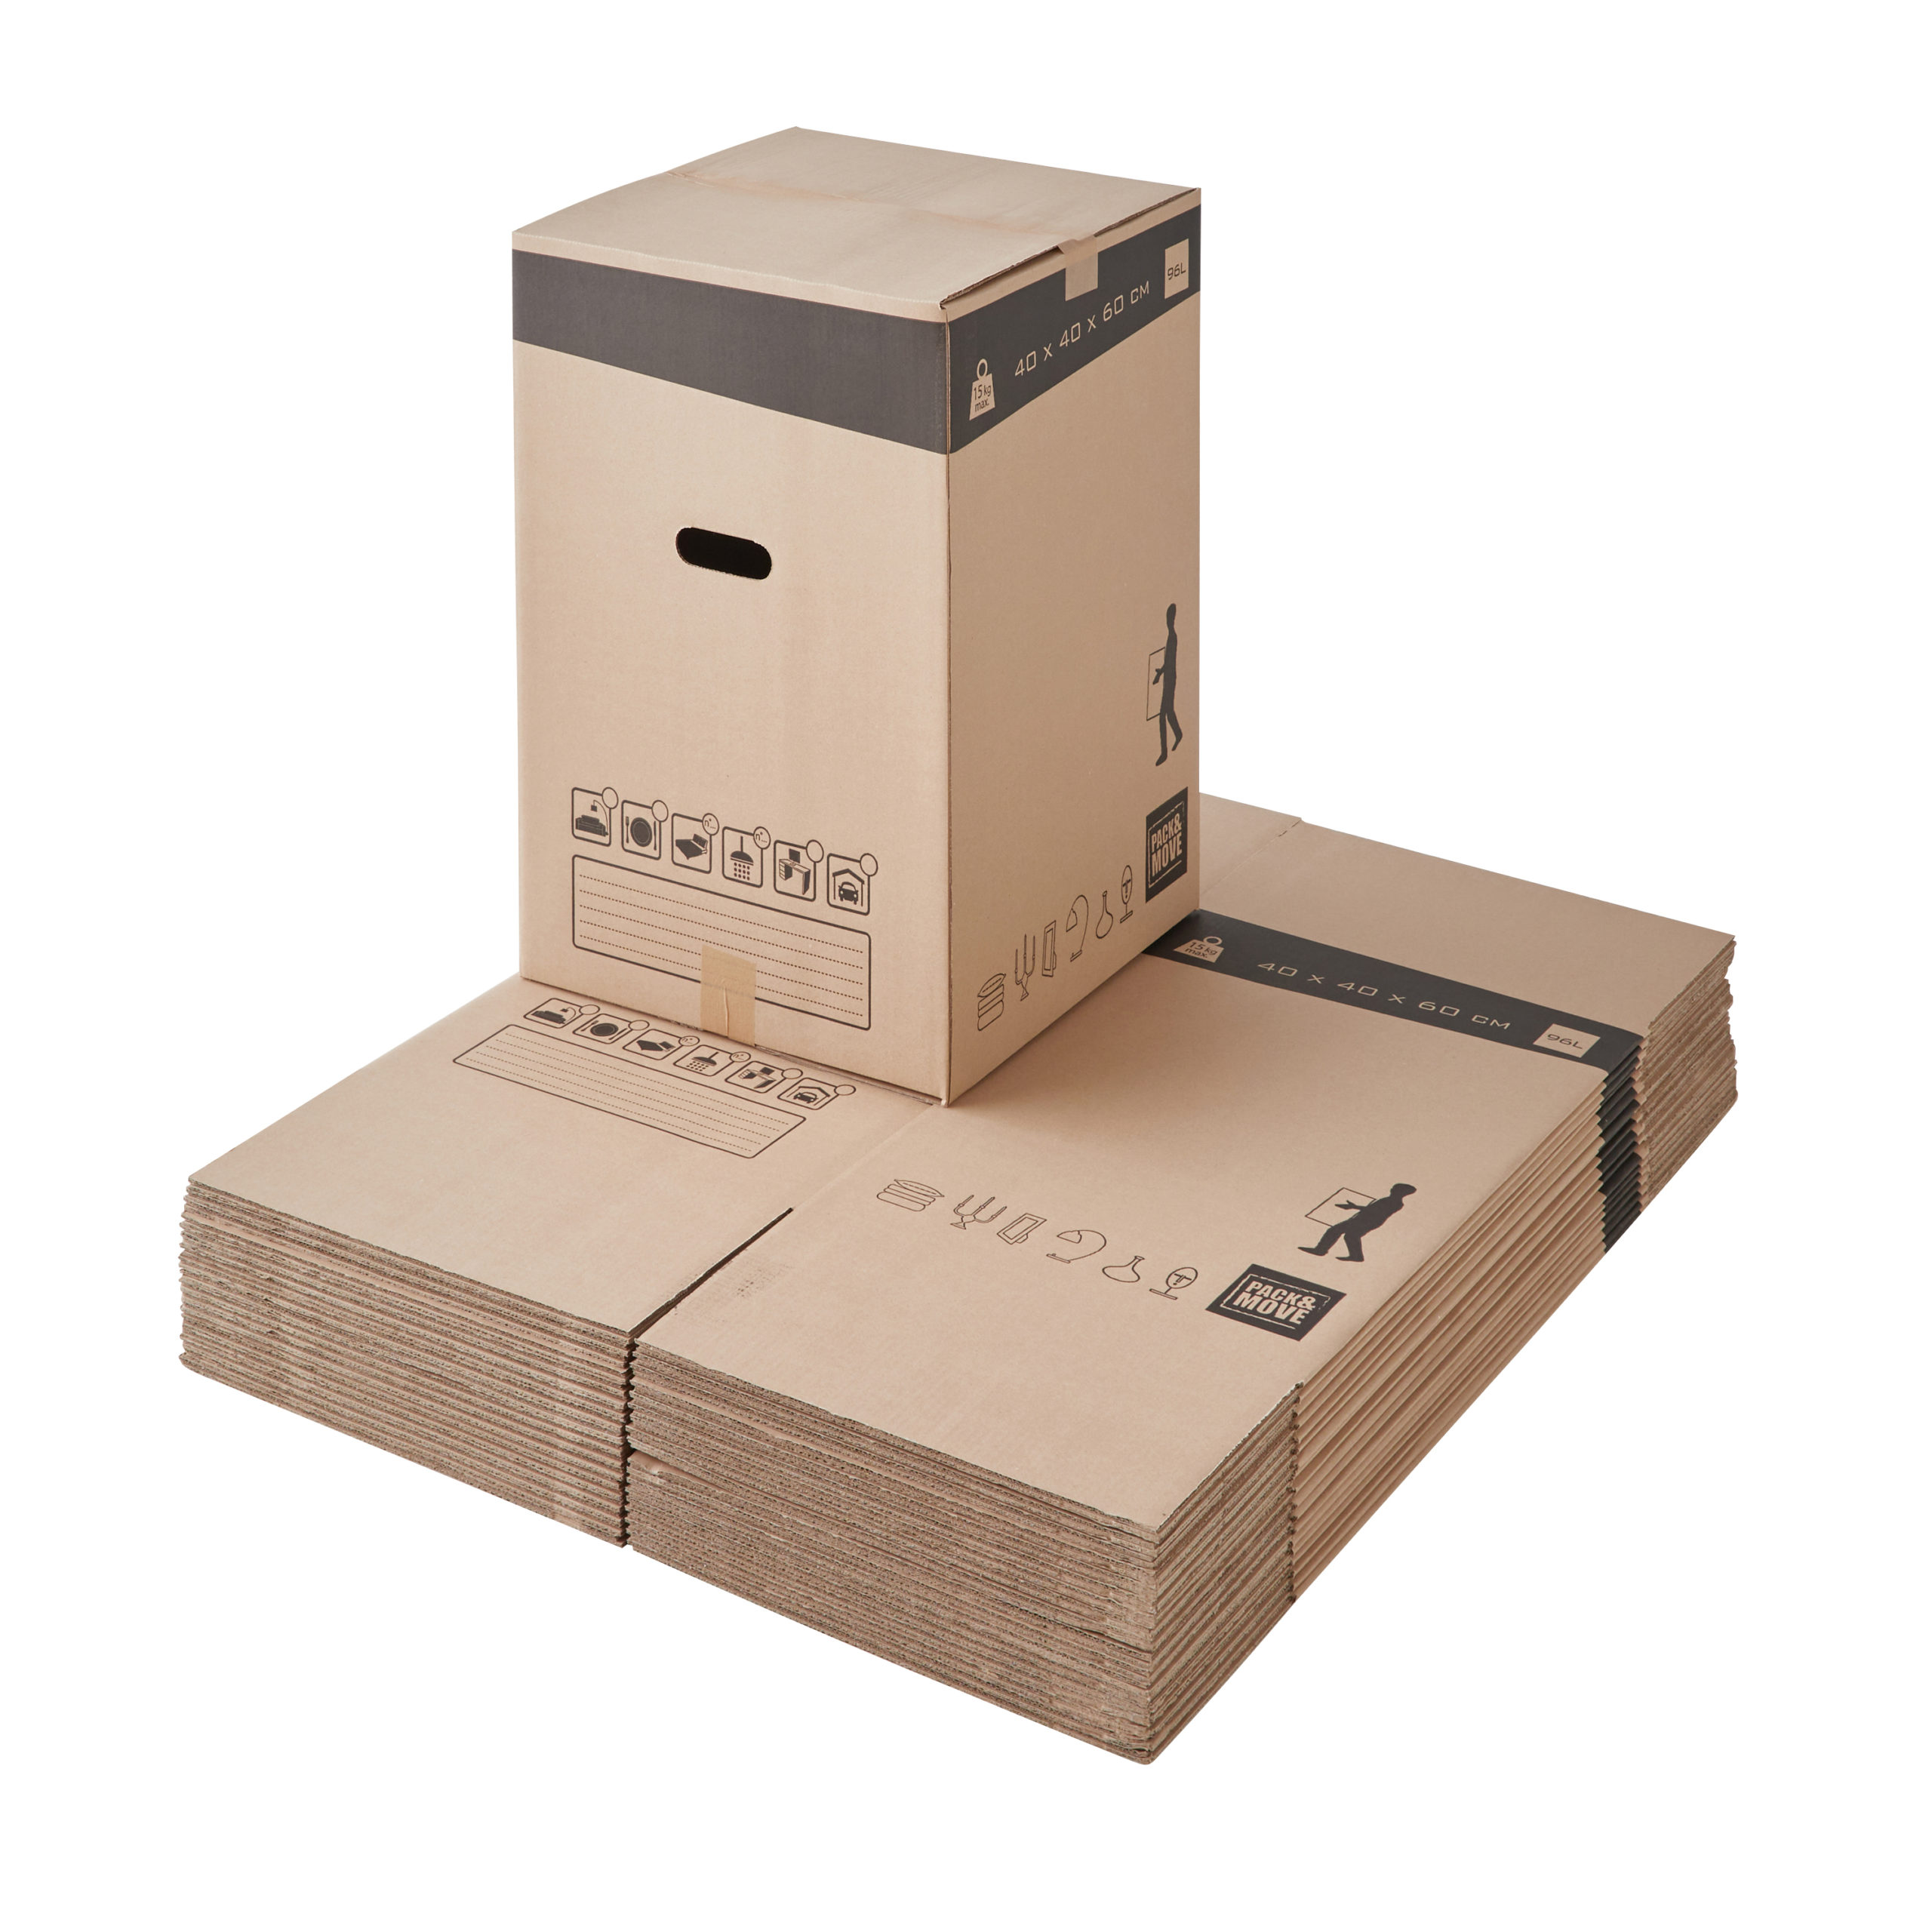 Cartons de déménagement - 128L - Pack and Move